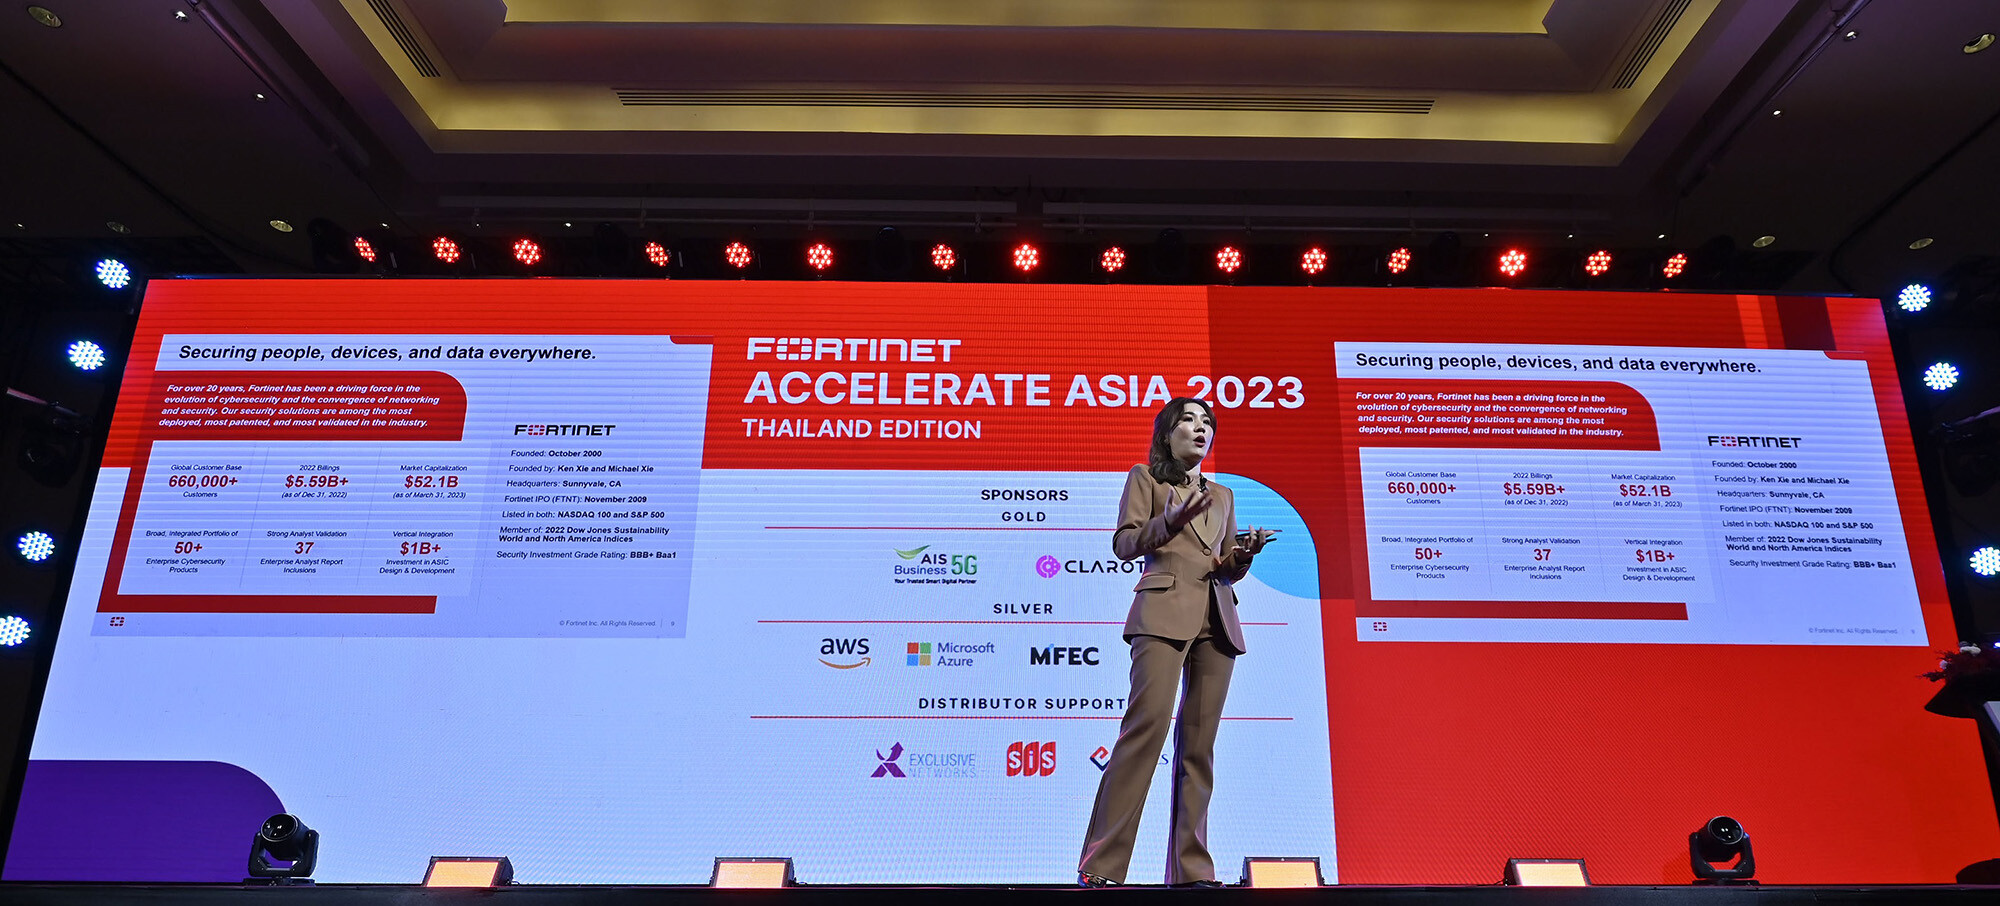 ฟอร์ติเน็ต จัดงาน Accelerate Asia 2023 ย้ำเบอร์ 1 ผู้นำแพลตฟอร์มไซเบอร์ซีเคียวริตี้ครบวงจร